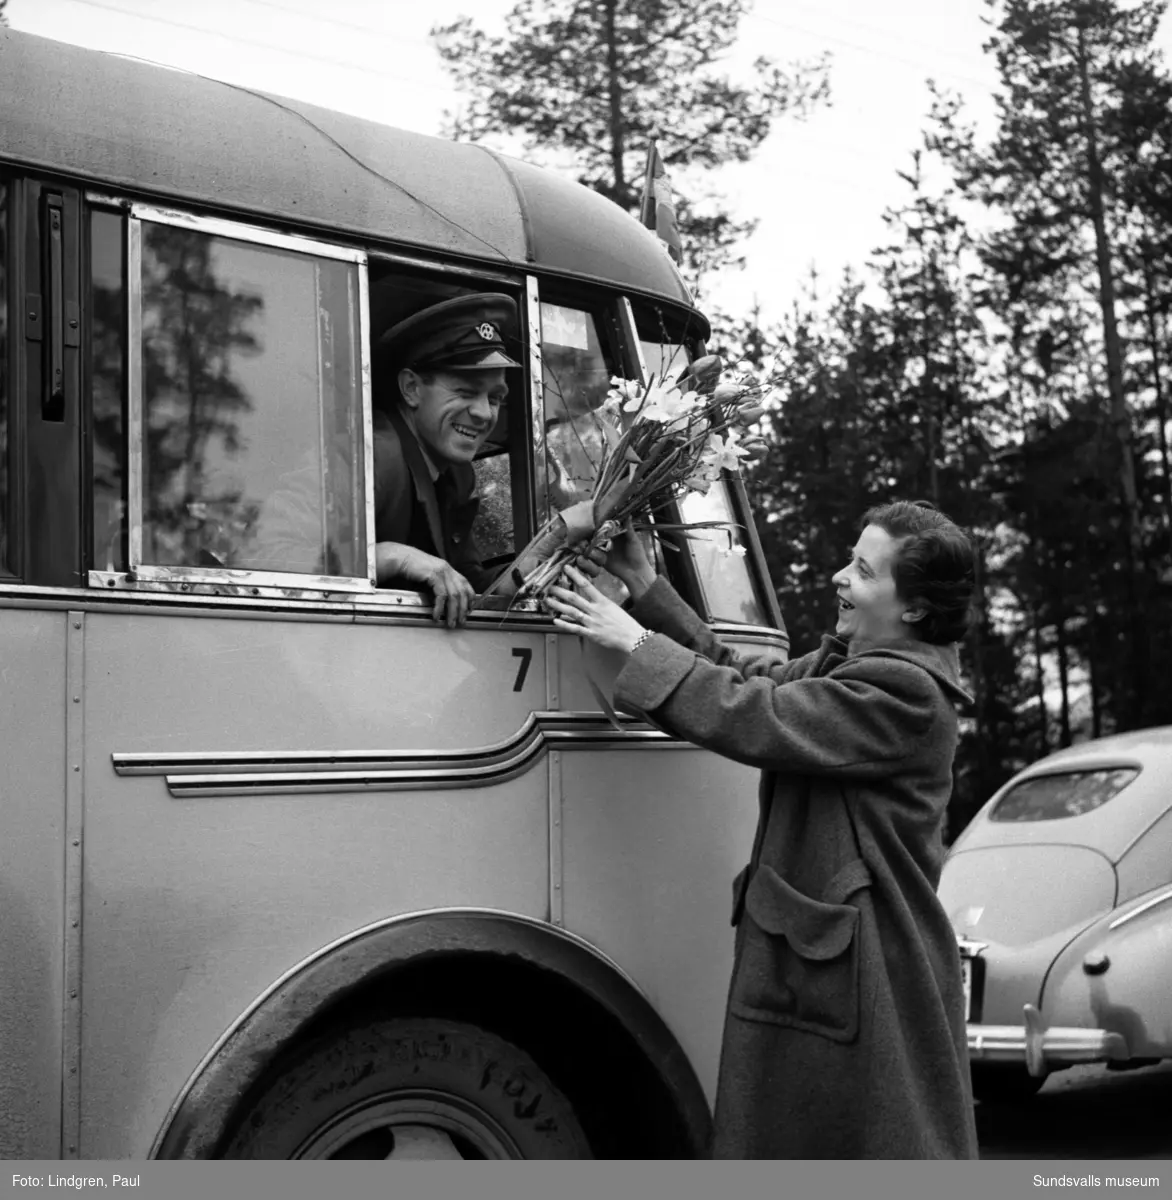 Invigning av ny busslinje, Sandarna-Sundsvall. Bussen går för första gången genom Solbacka, vilket var efterlängtat av de boende i byn. Busschauffören uppvaktas med en blombukett av en glad Solbackadam.